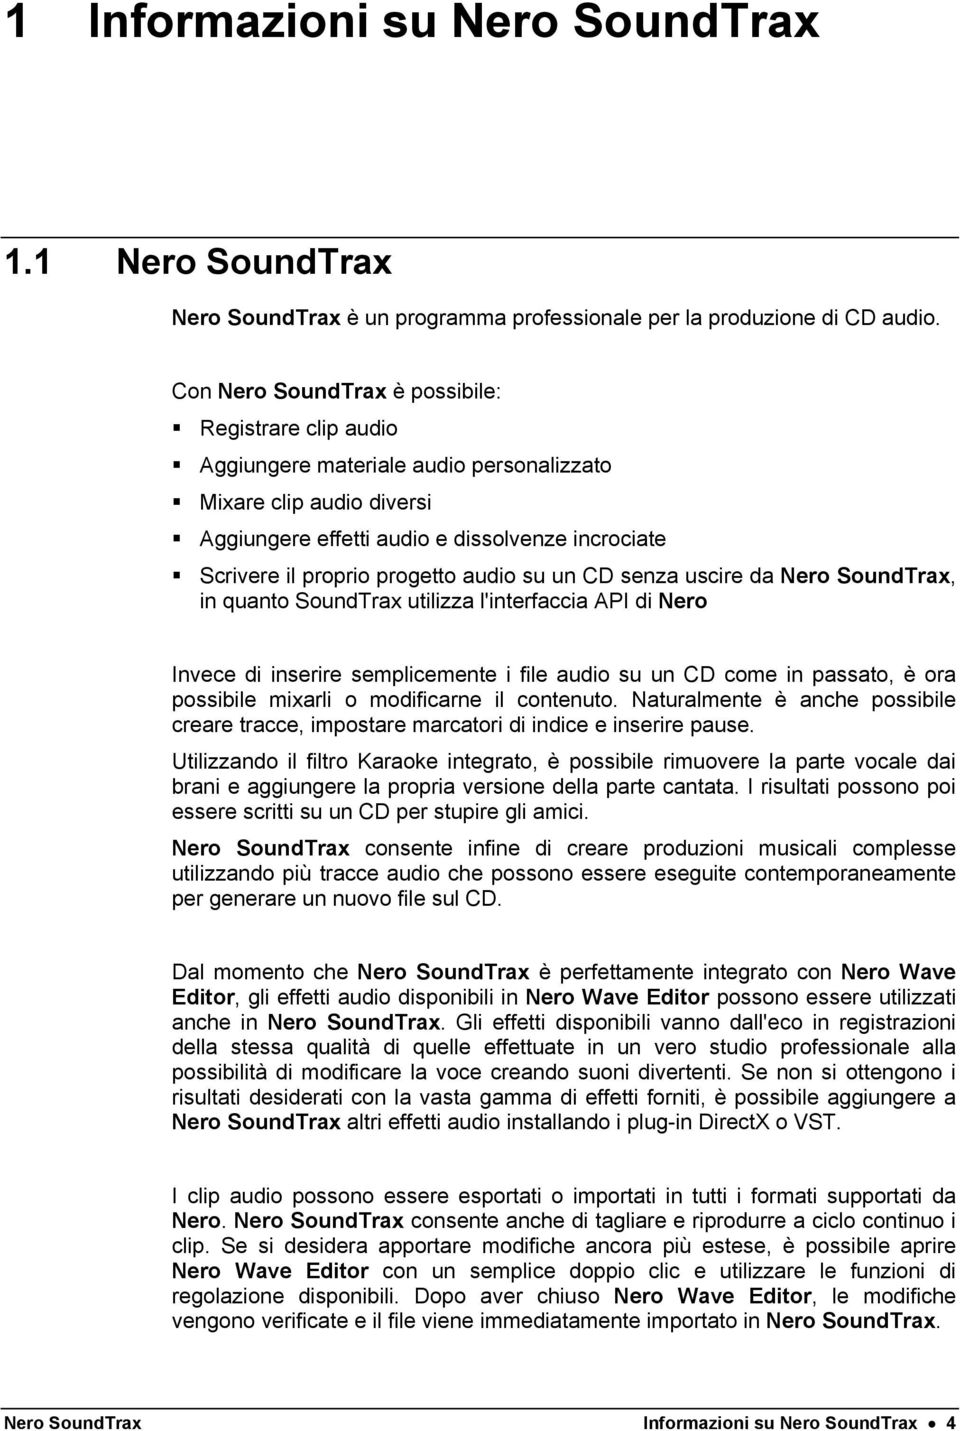 progetto audio su un CD senza uscire da Nero SoundTrax, in quanto SoundTrax utilizza l'interfaccia API di Nero Invece di inserire semplicemente i file audio su un CD come in passato, è ora possibile